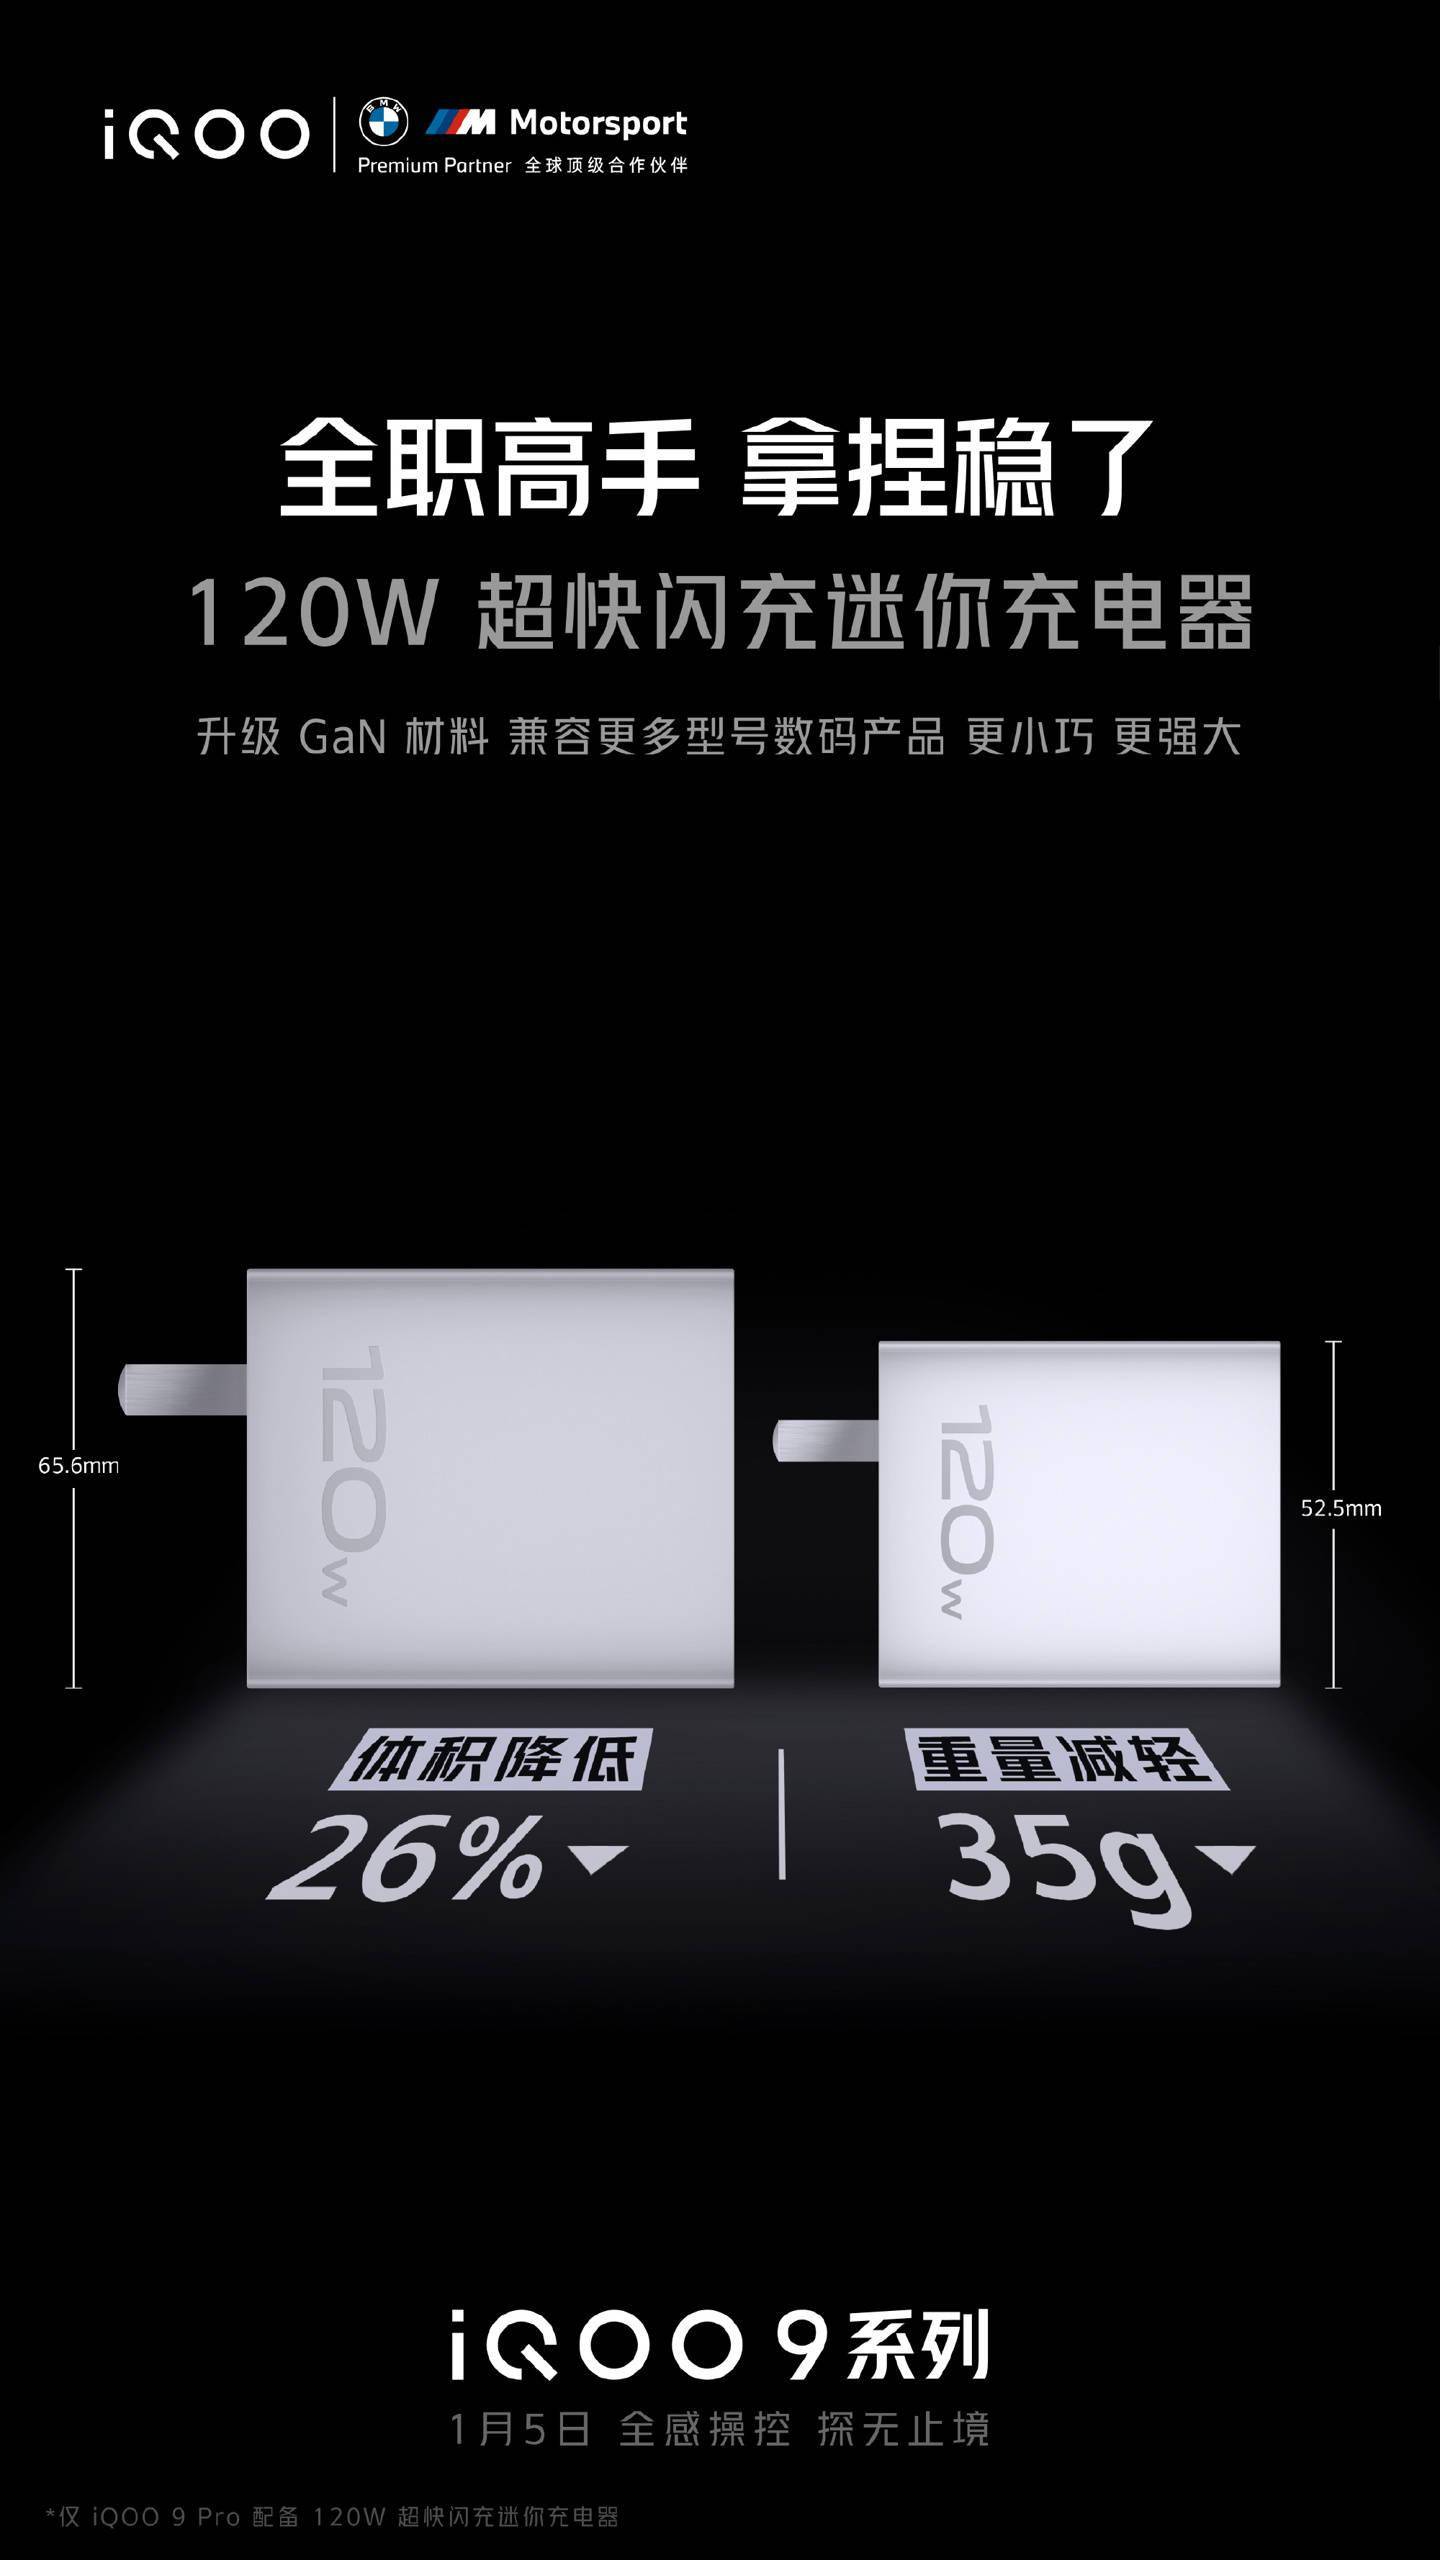 体积|iQOO 9 将随机附送新款 120W 氮化镓充电器，体积减小 26%